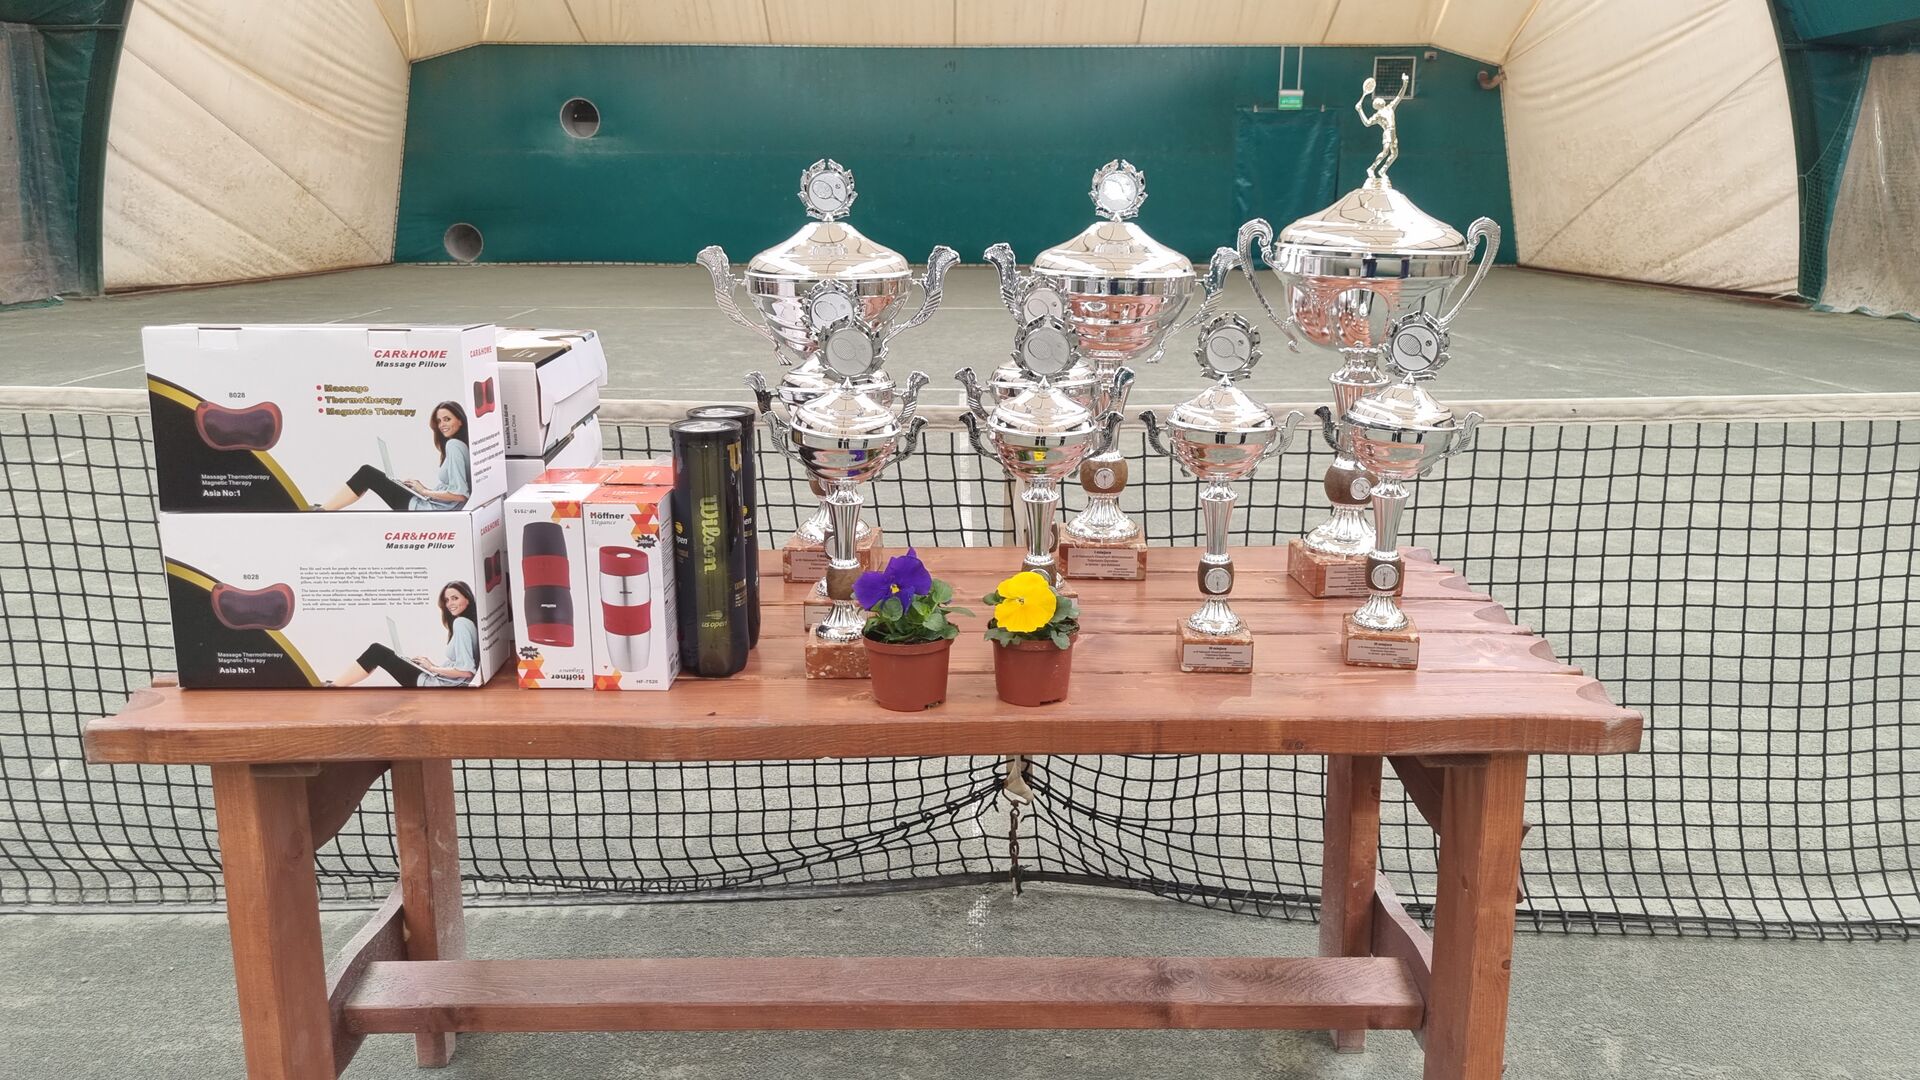 III Halowe Mistrzostwa Trójmiasta Ogrodów w tenisie ziemnym – gra podwójna - nagrody